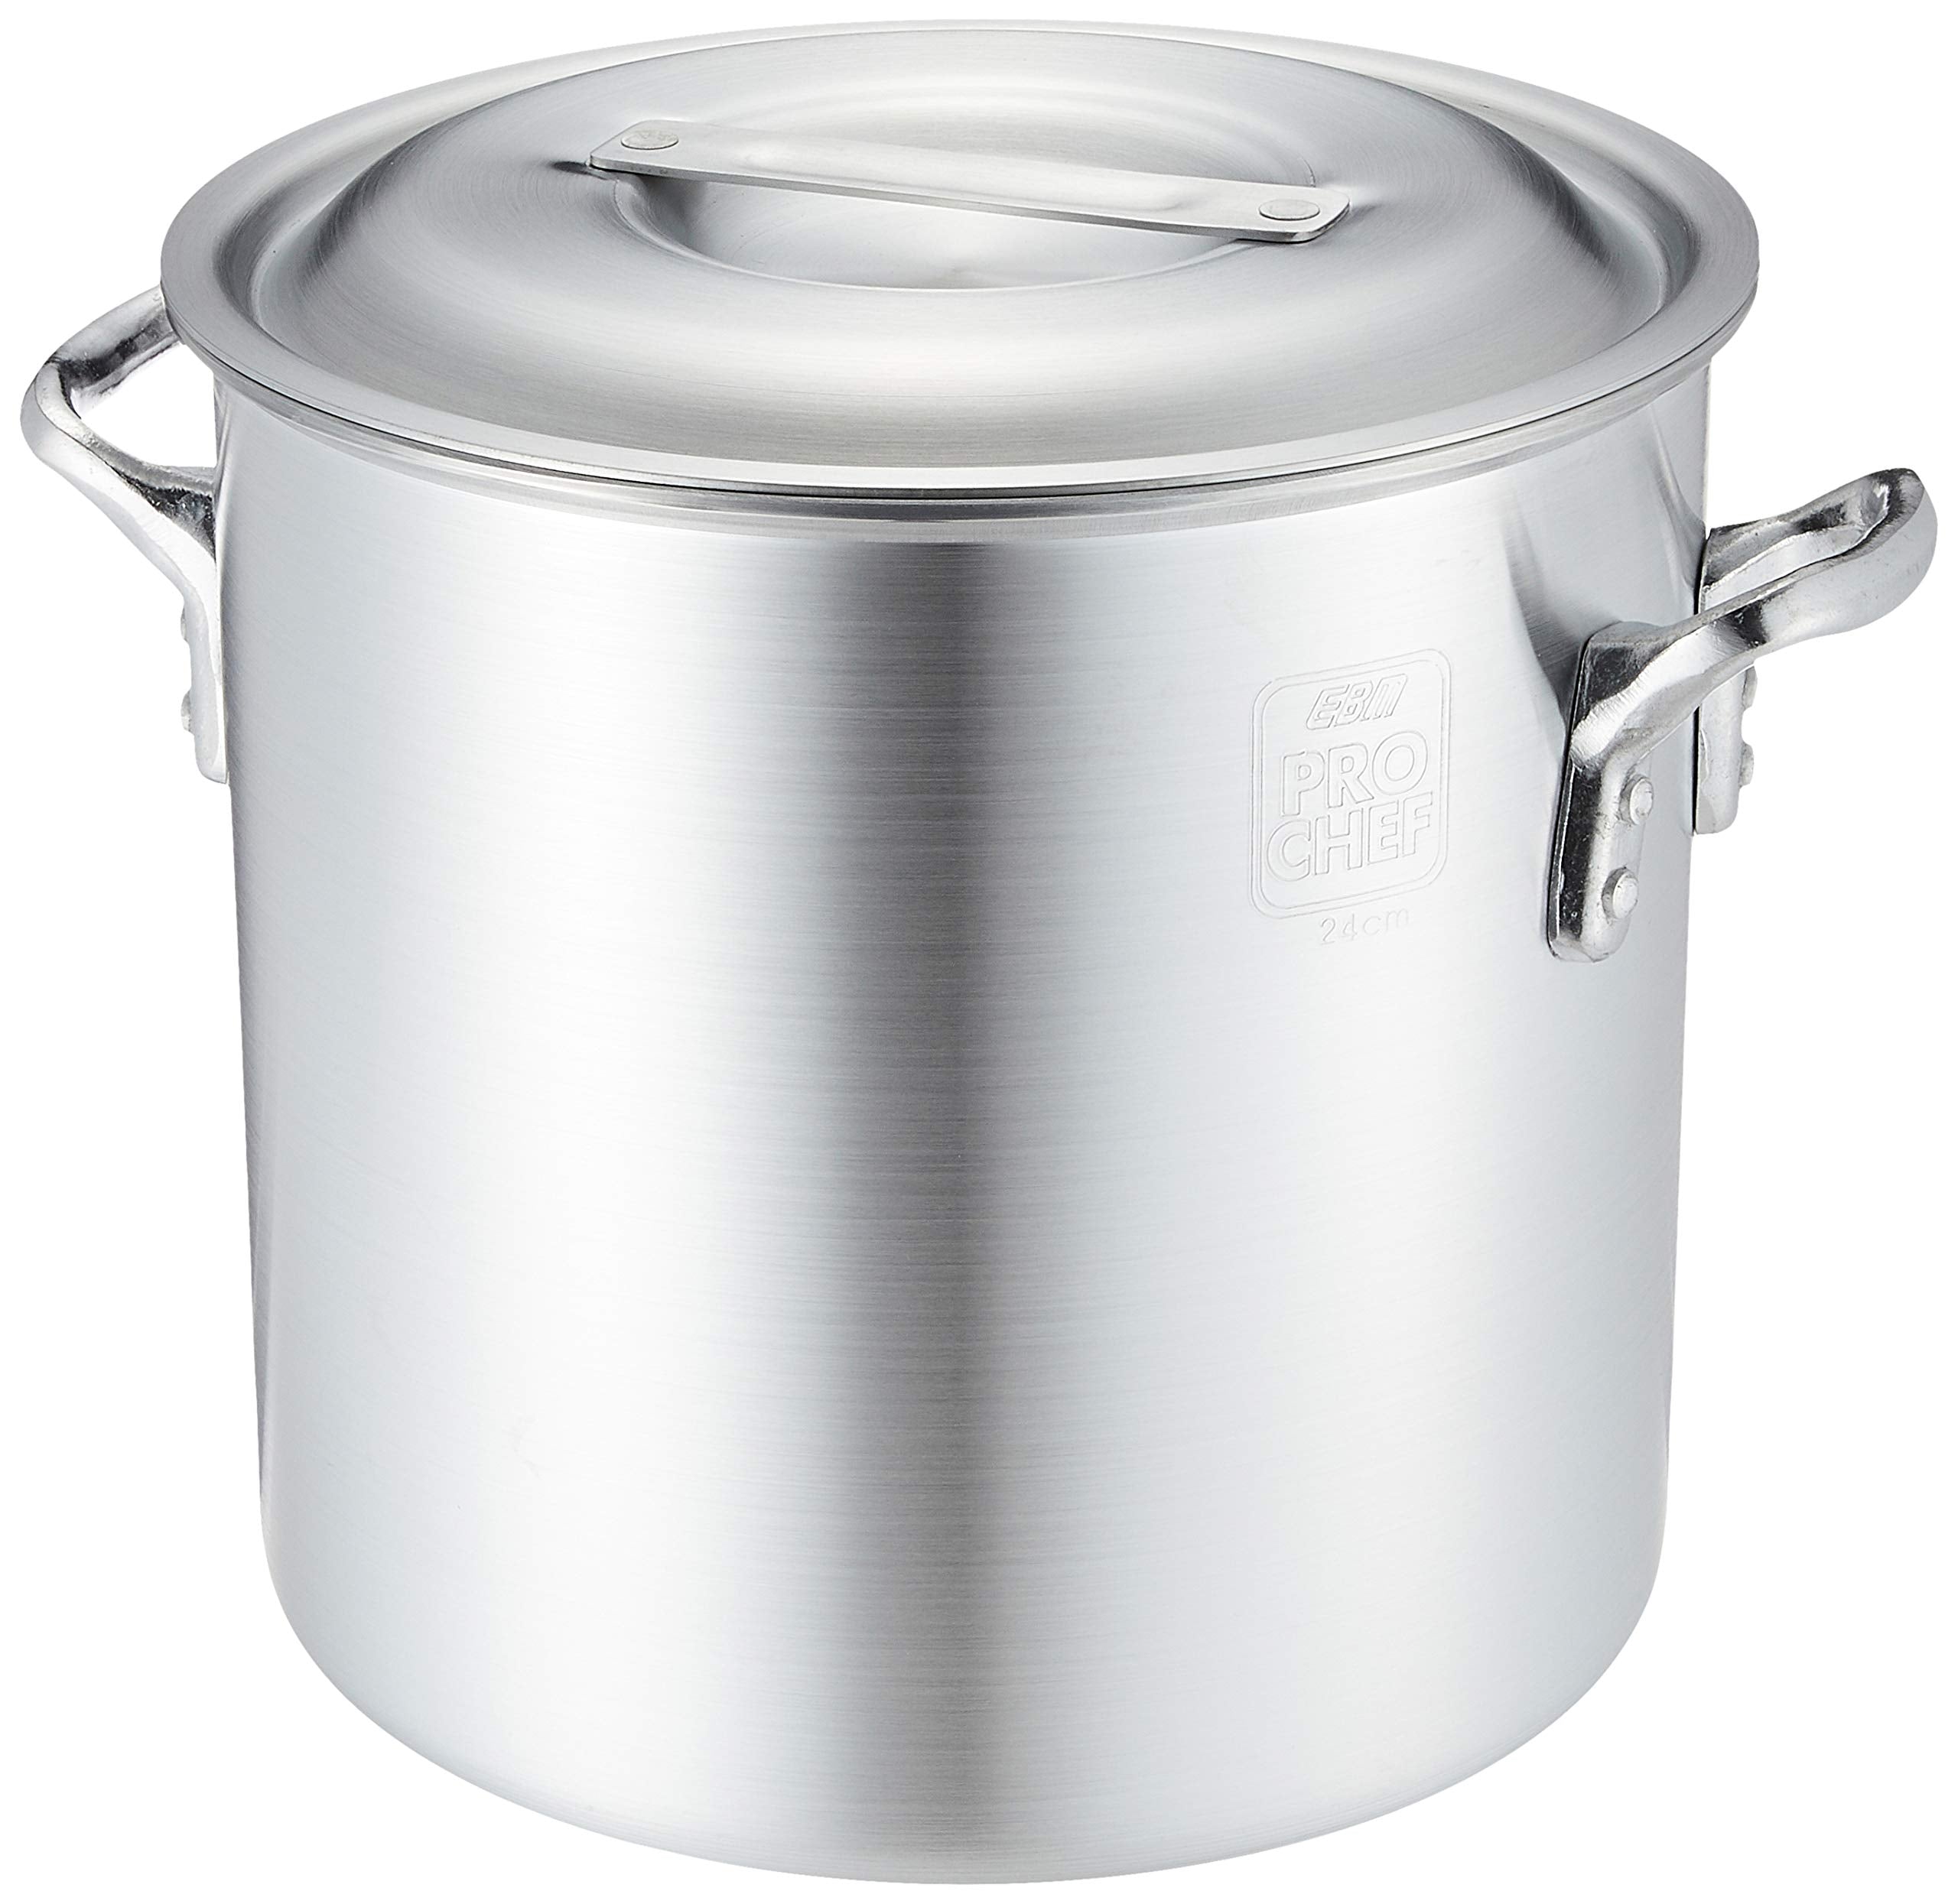 Ebm 24cm Aluminum Professional Chef Pot